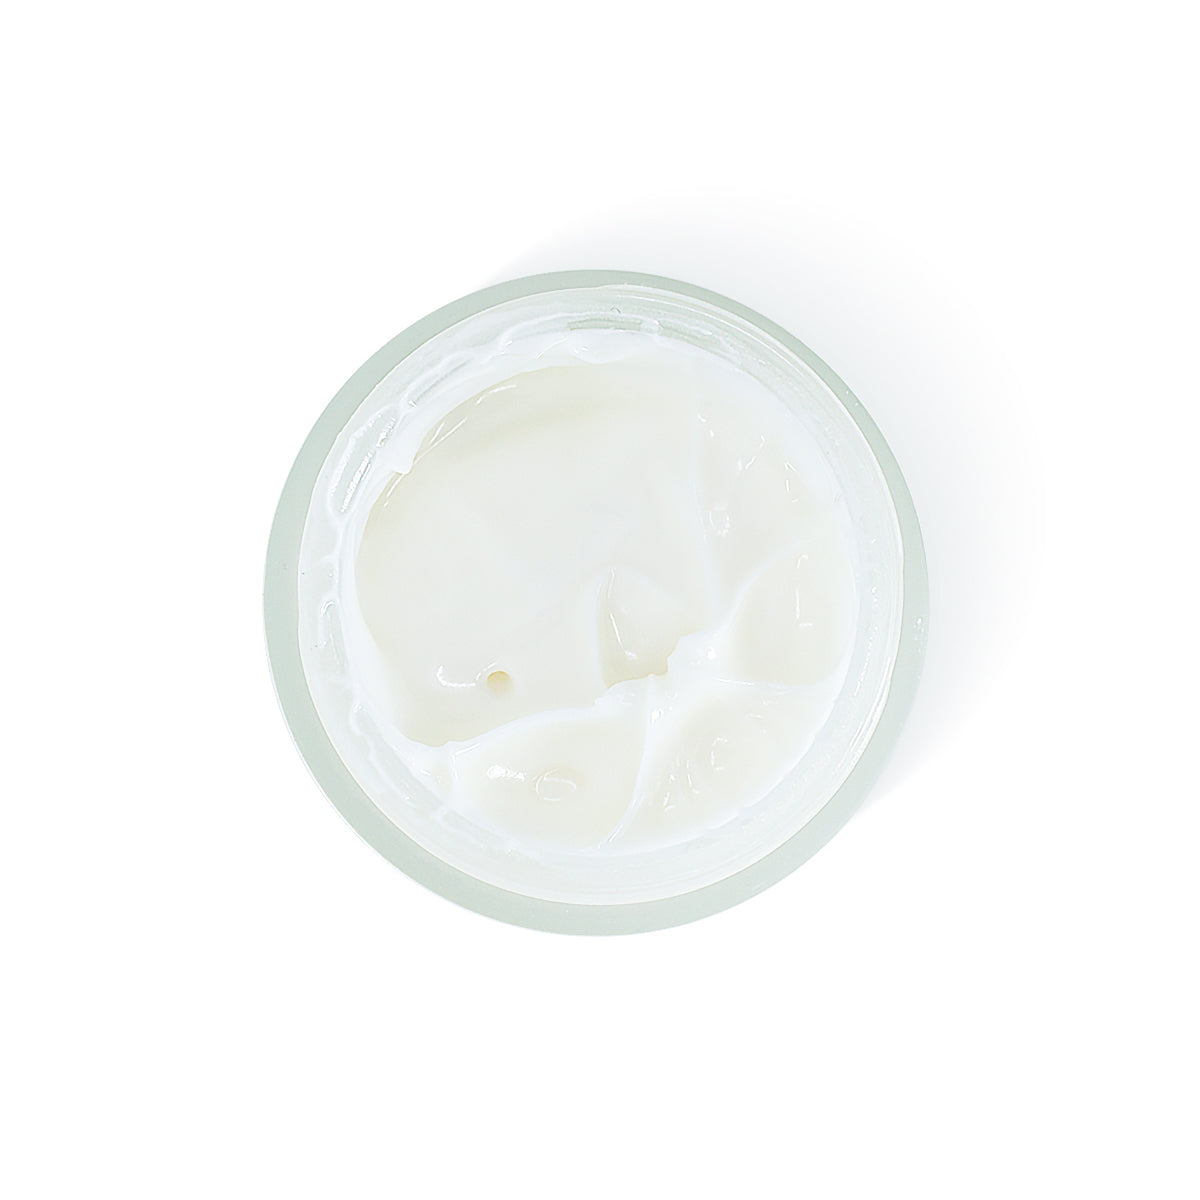 Omic+ Vitamin C 20% L- Ascorbic Acid Antioxidant Face Cream 50ml